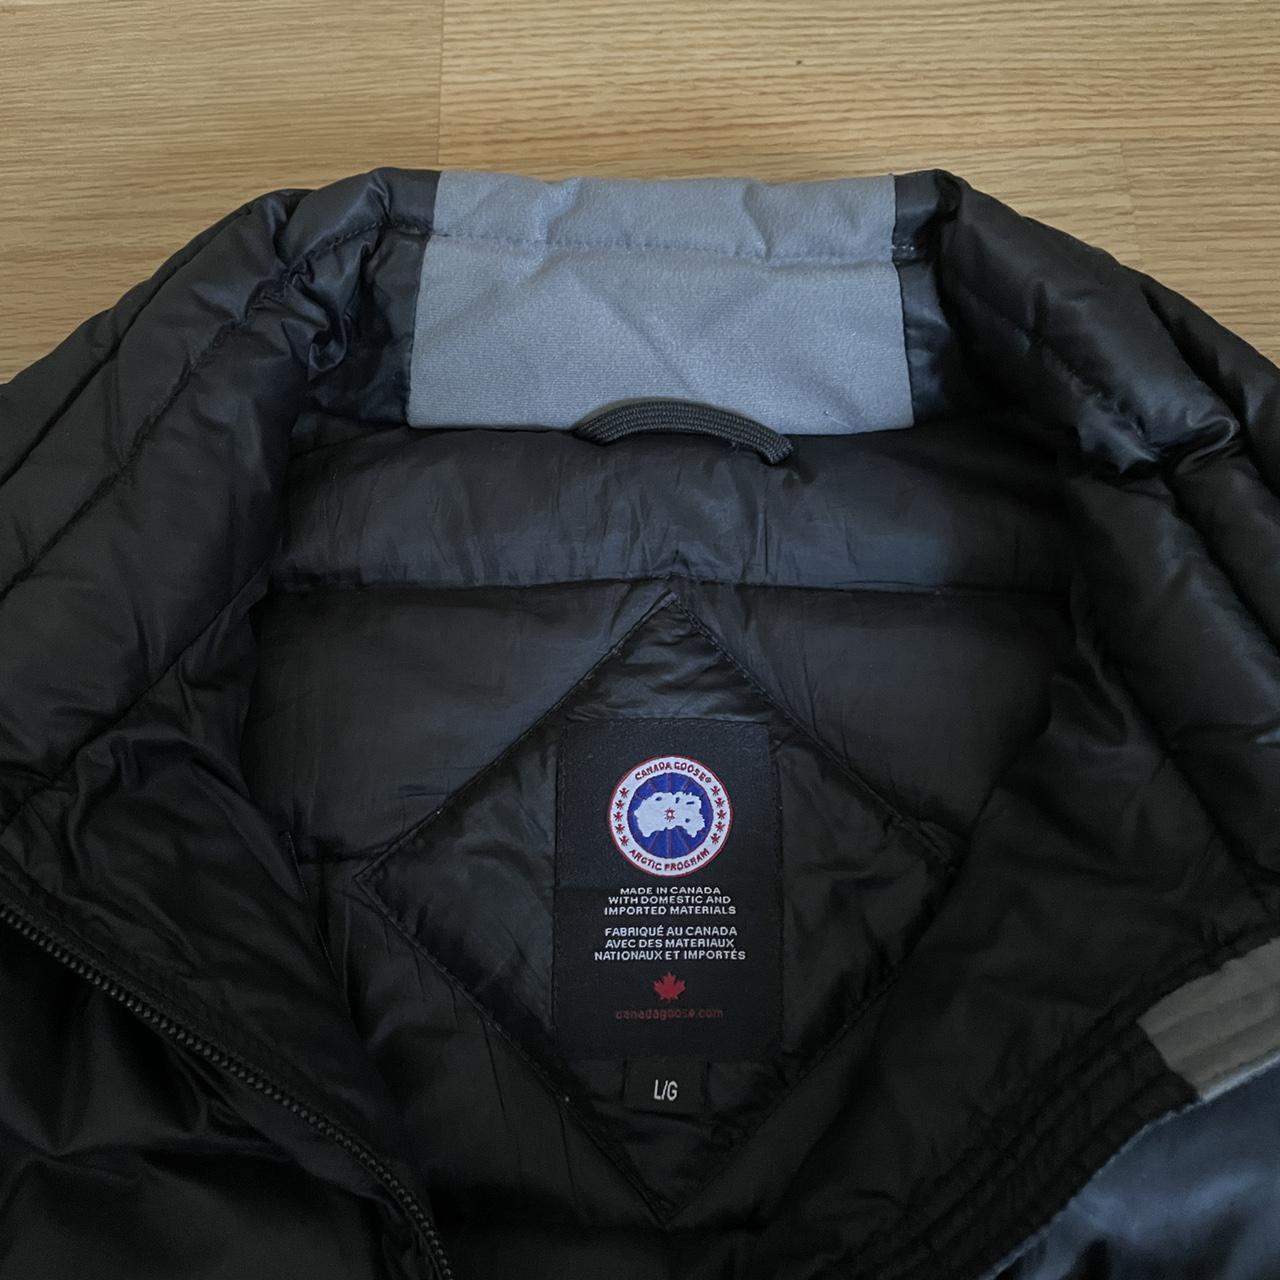 Product Image 3 - Canada Goose Lodge Jacket 

Size